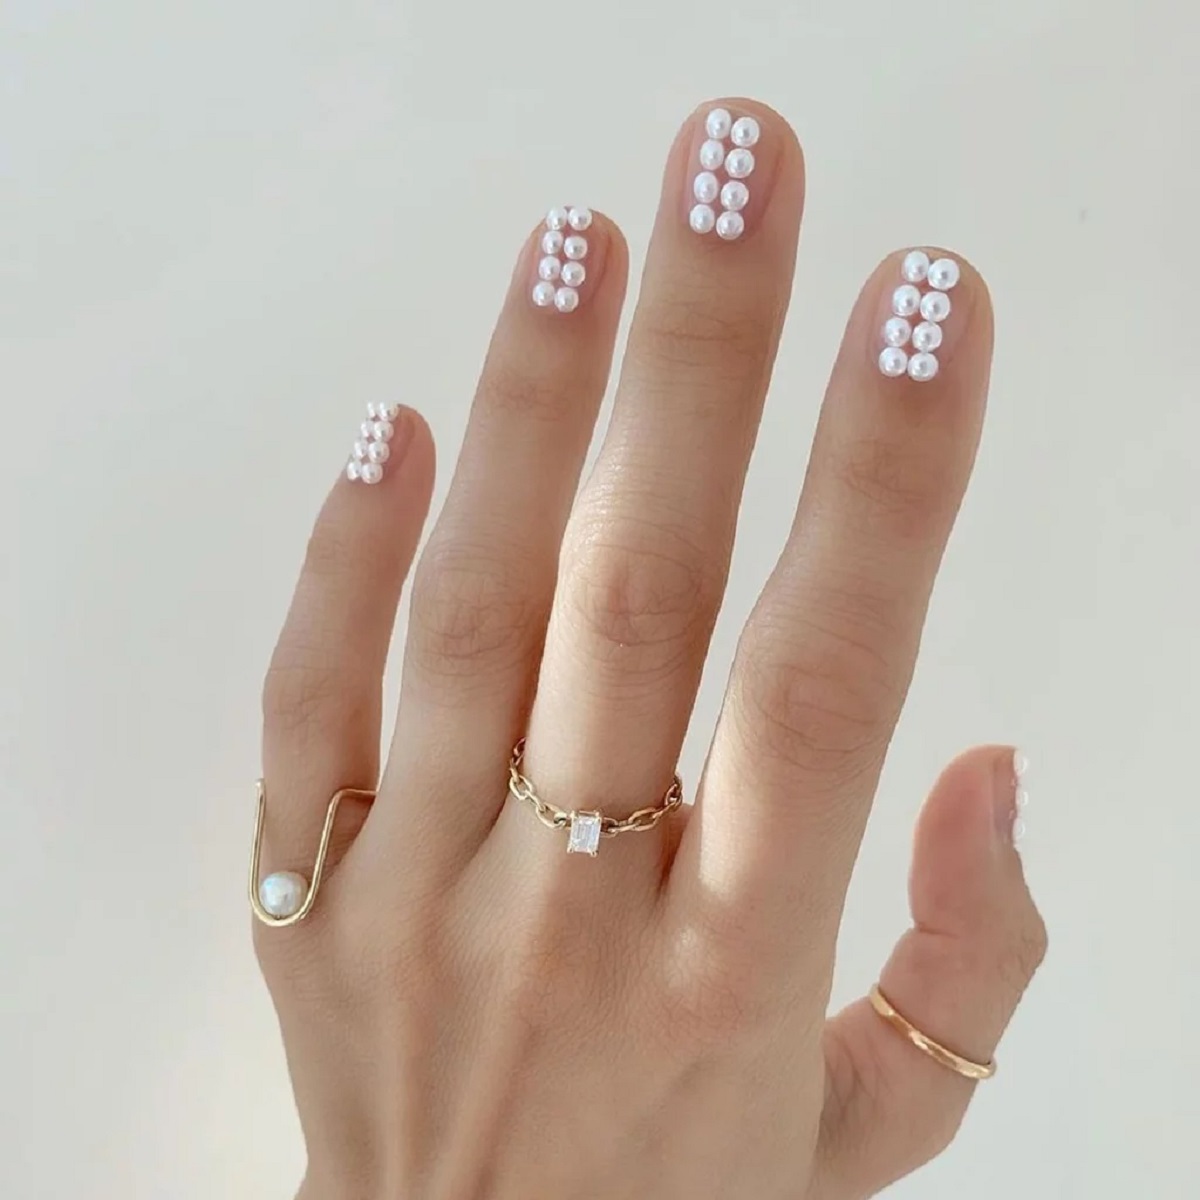 Pearls nails